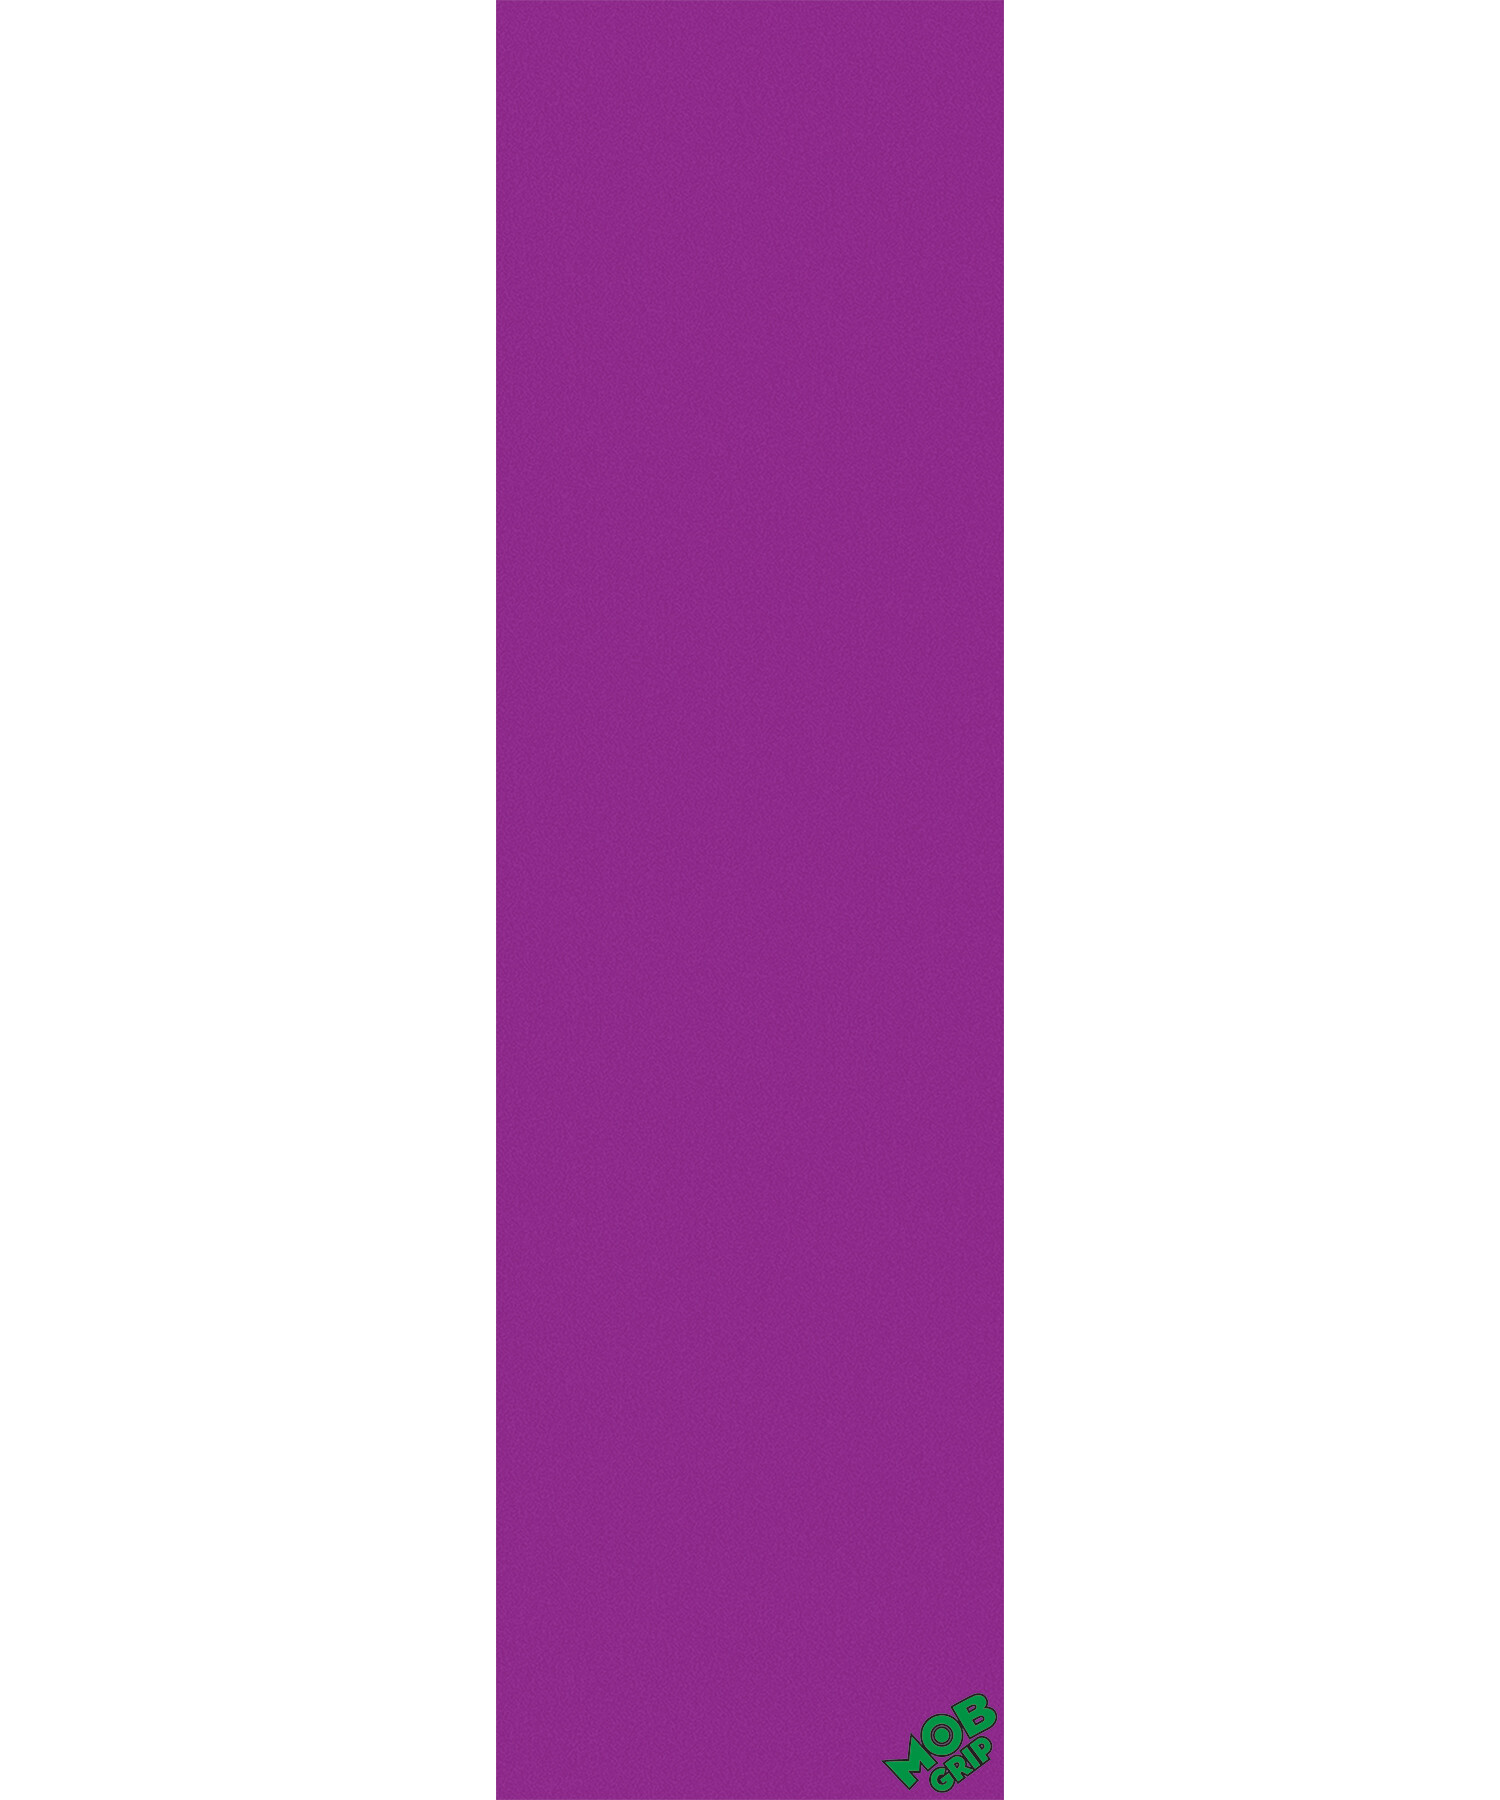 MOB griptape 9" purple